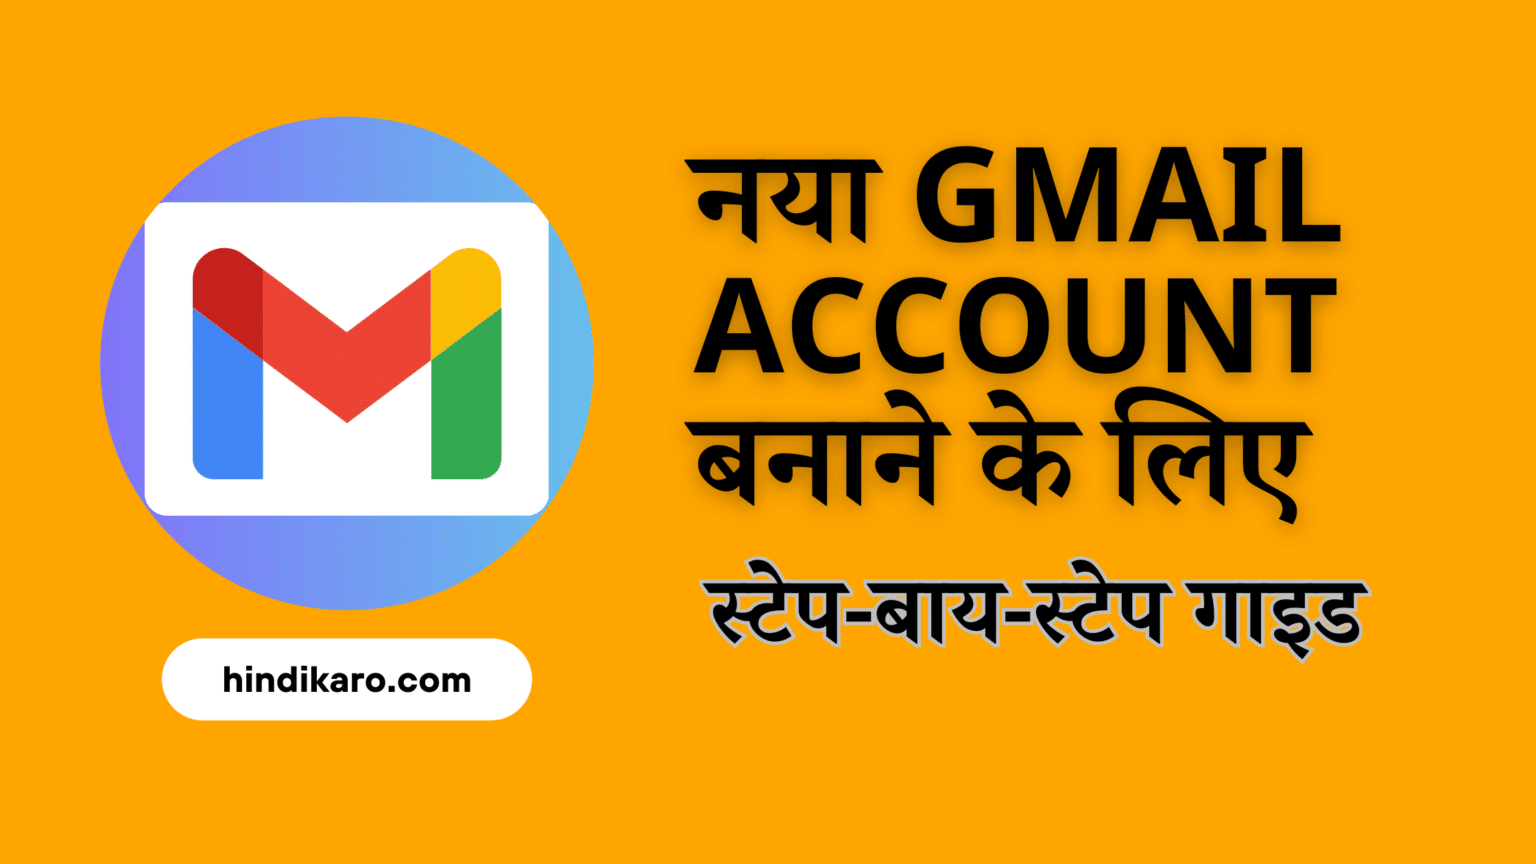 नया Gmail account बनाने के लिए स्टेप-बाय-स्टेप गाइड